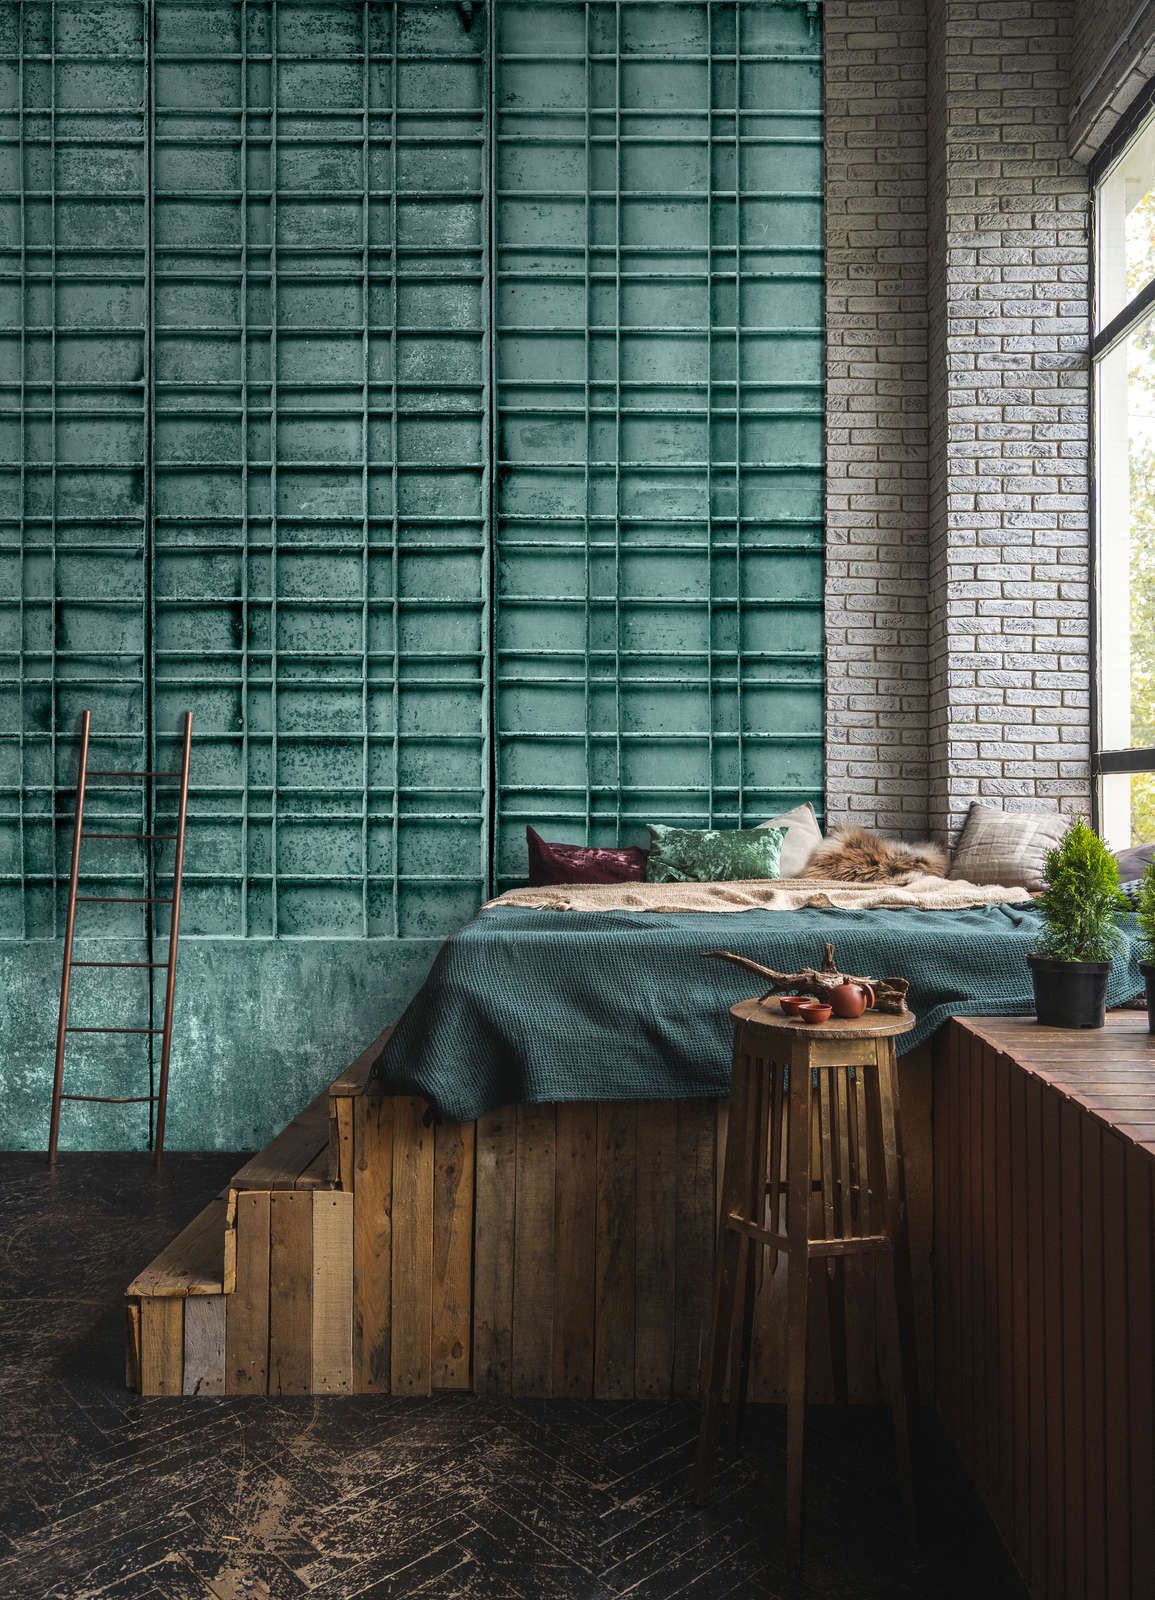             Digital behang »bangalore« - Close-up van een petrolkleurig metalen hek met rechthoekige decoraties - Gladde, licht parelmoerachtige non-woven stof
        